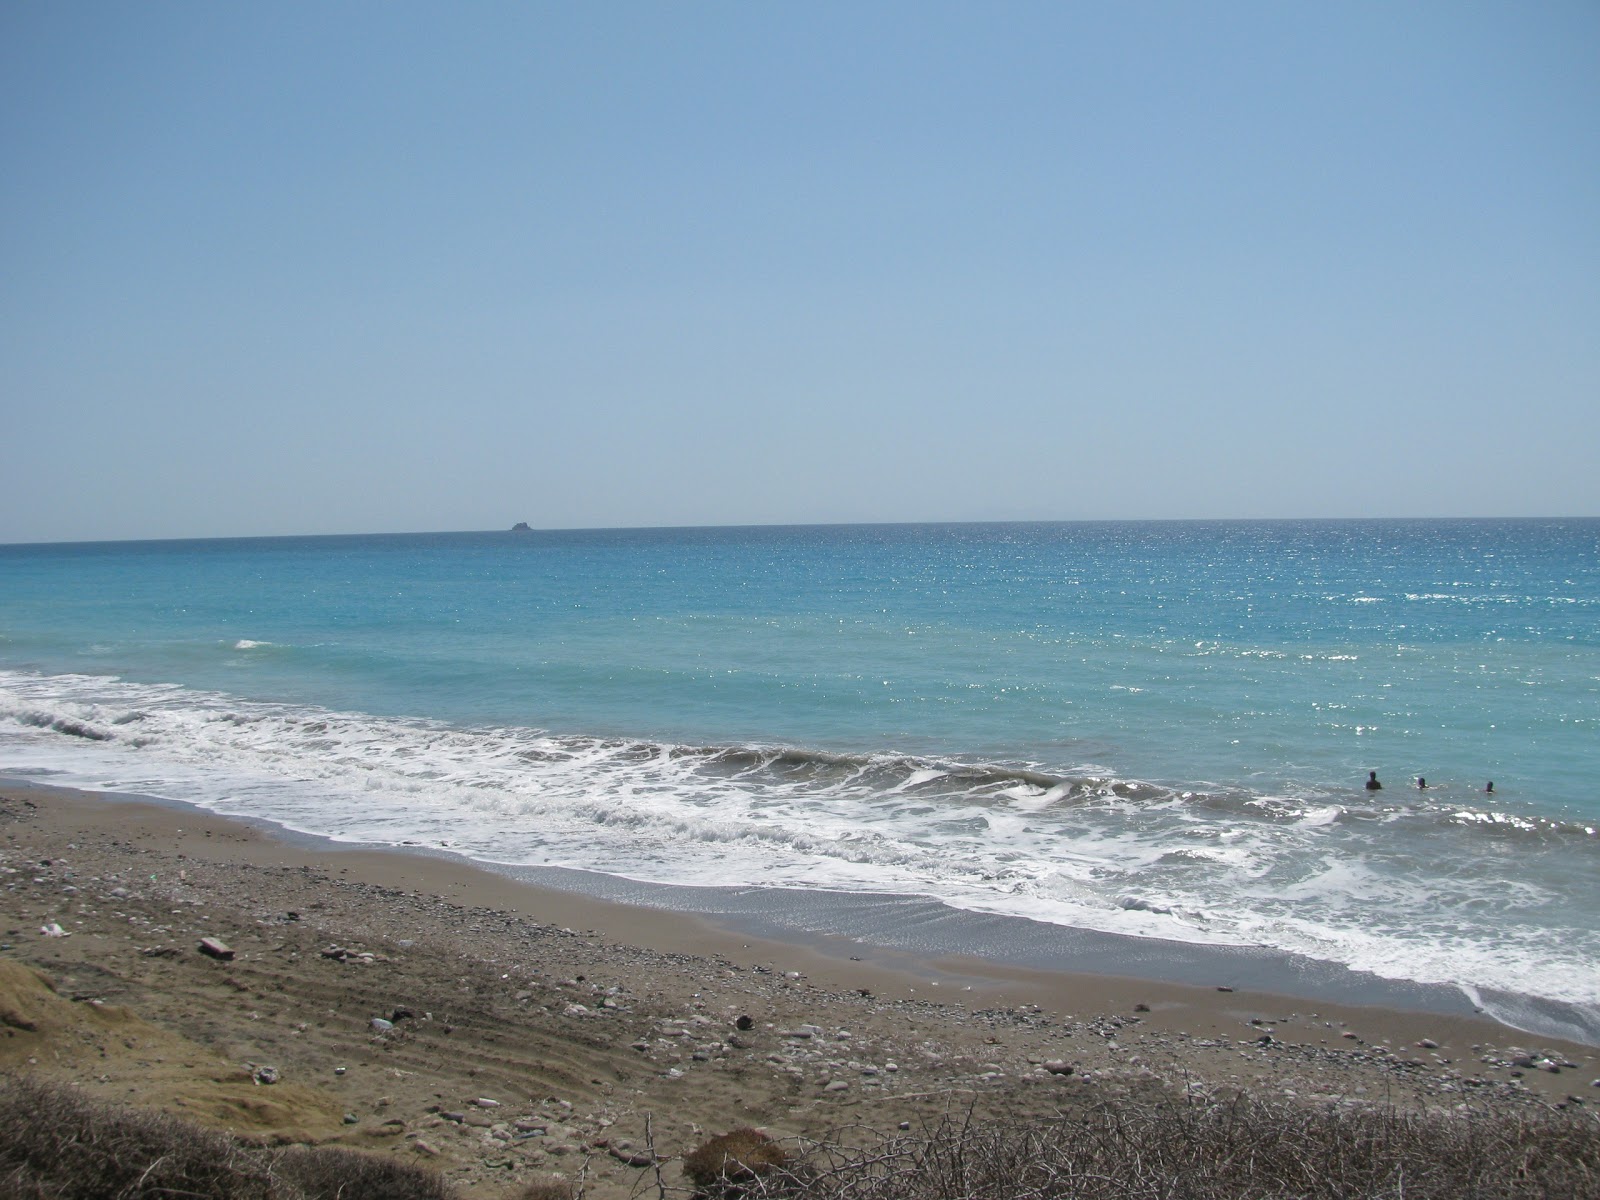 Foto von Wild beach III mit langer gerader strand